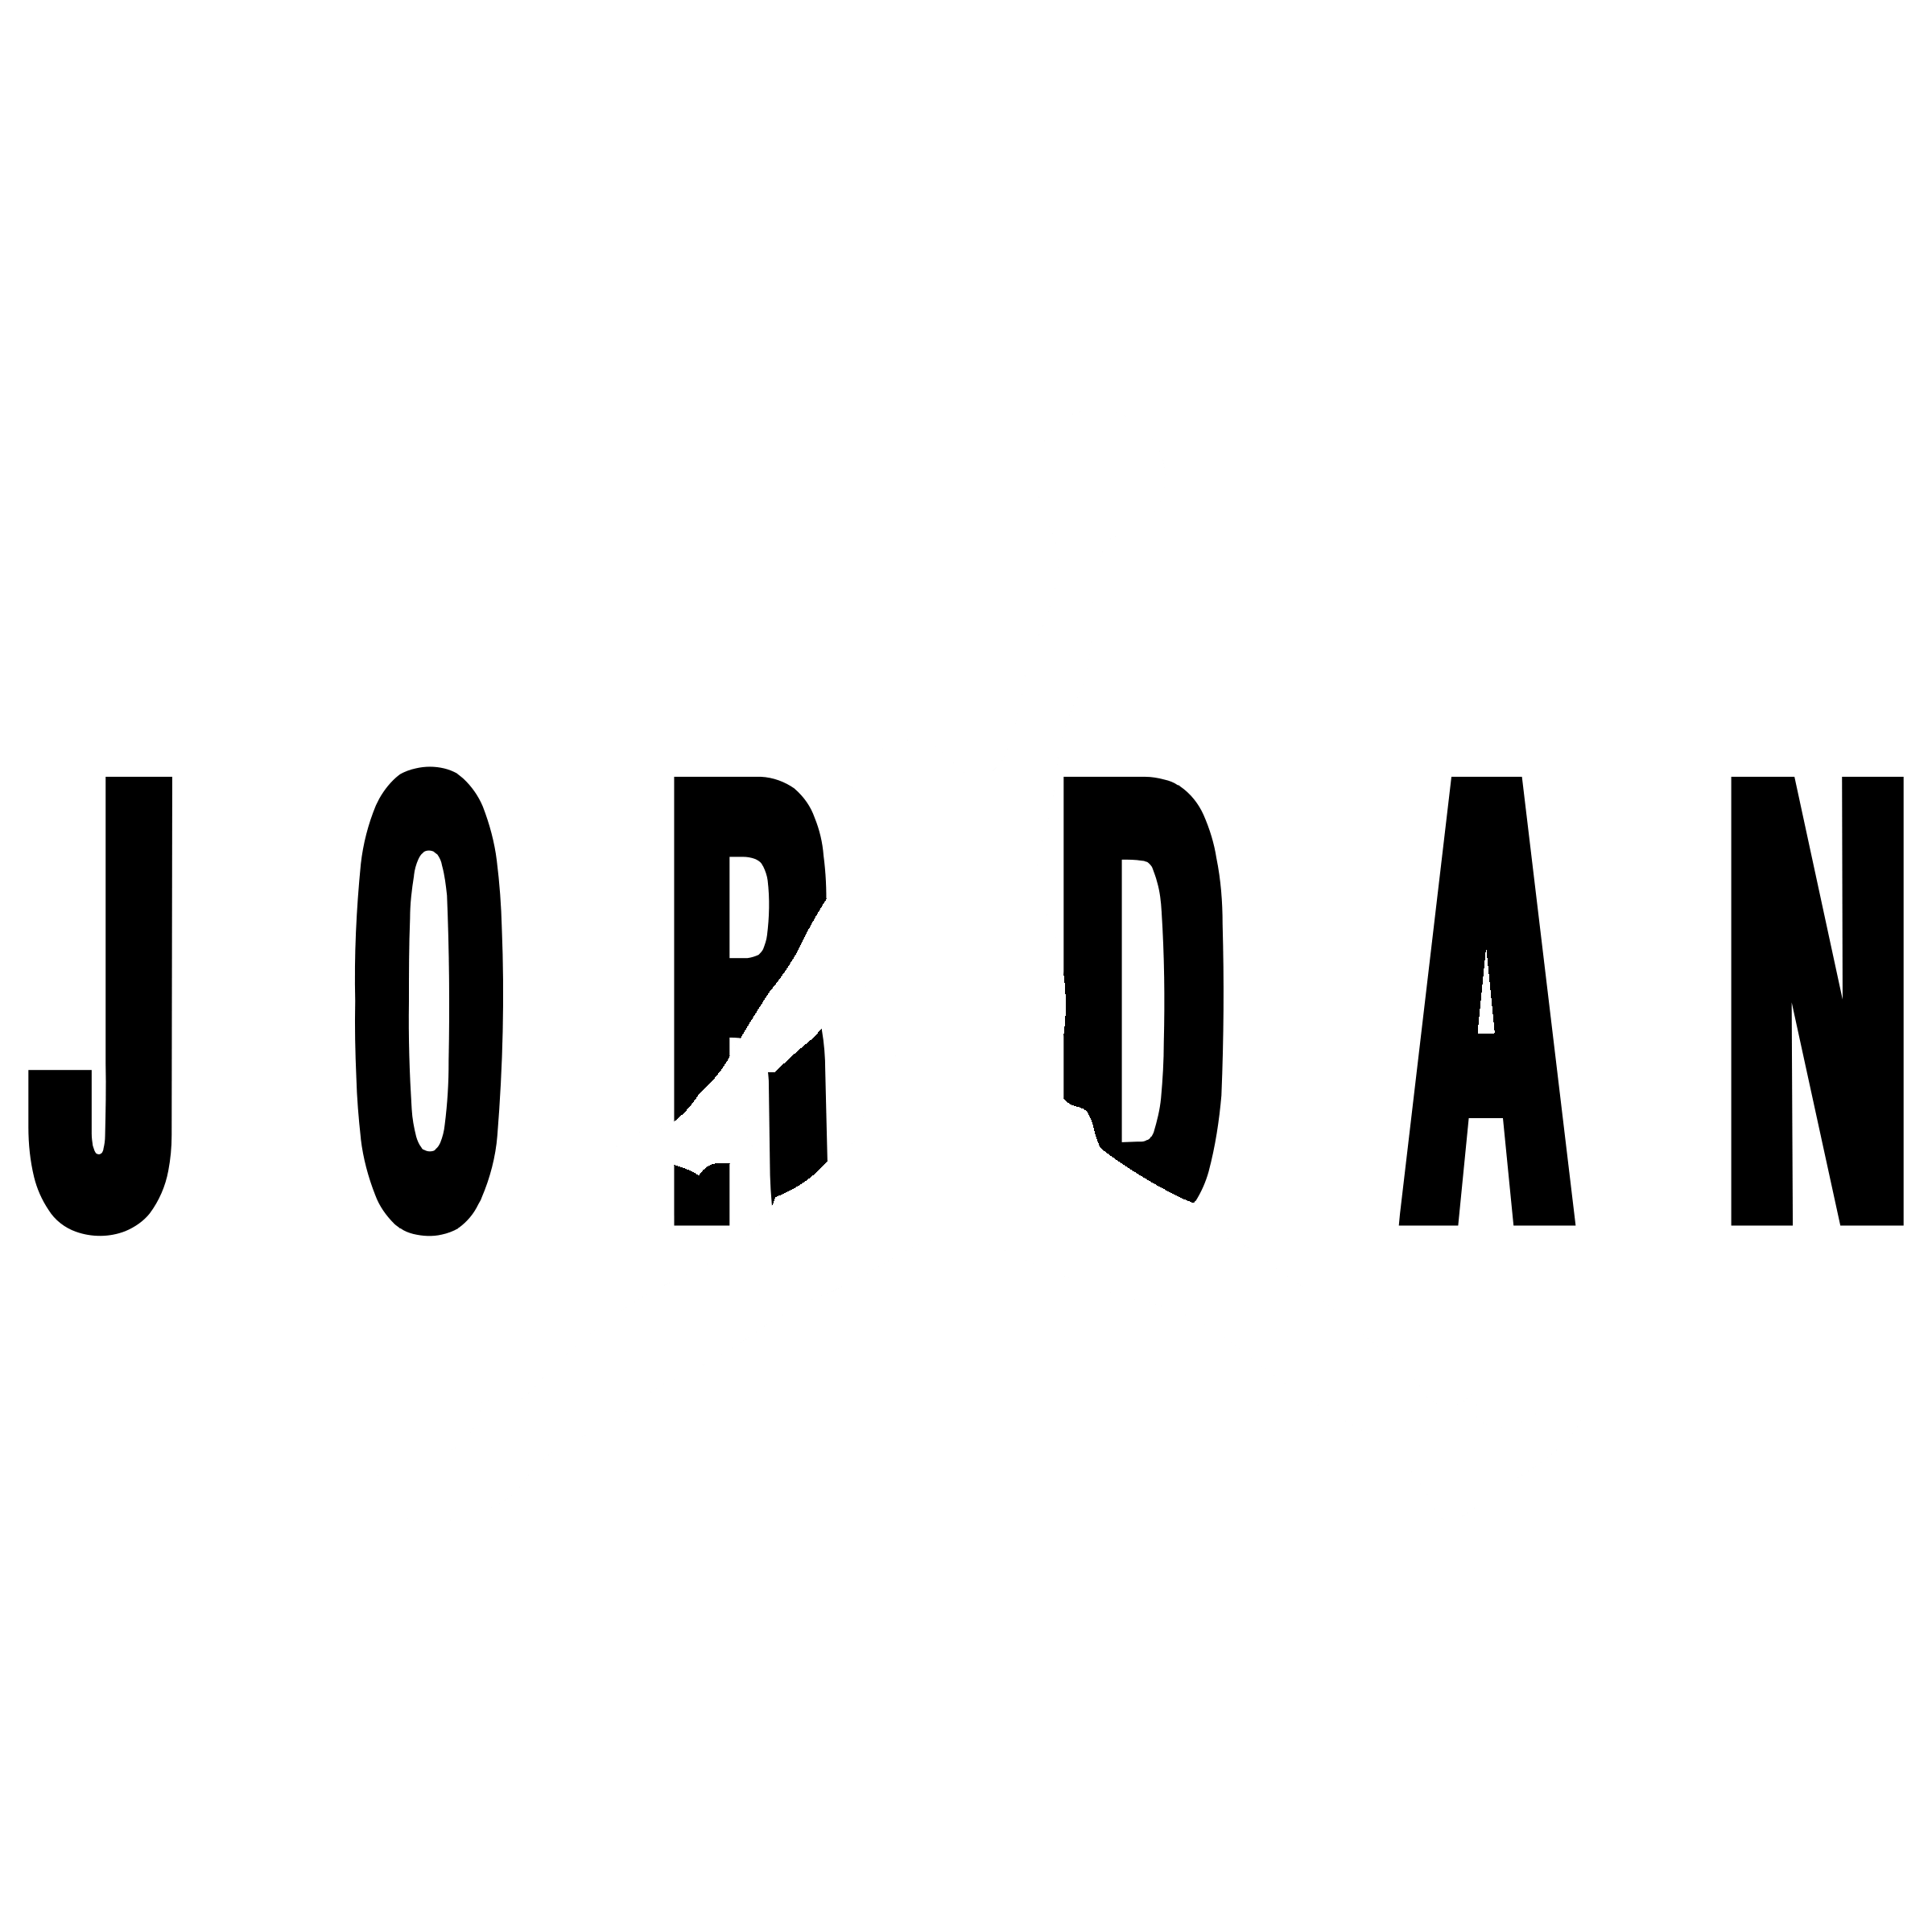 172-jordan-logo-transparent-17106937720853.png